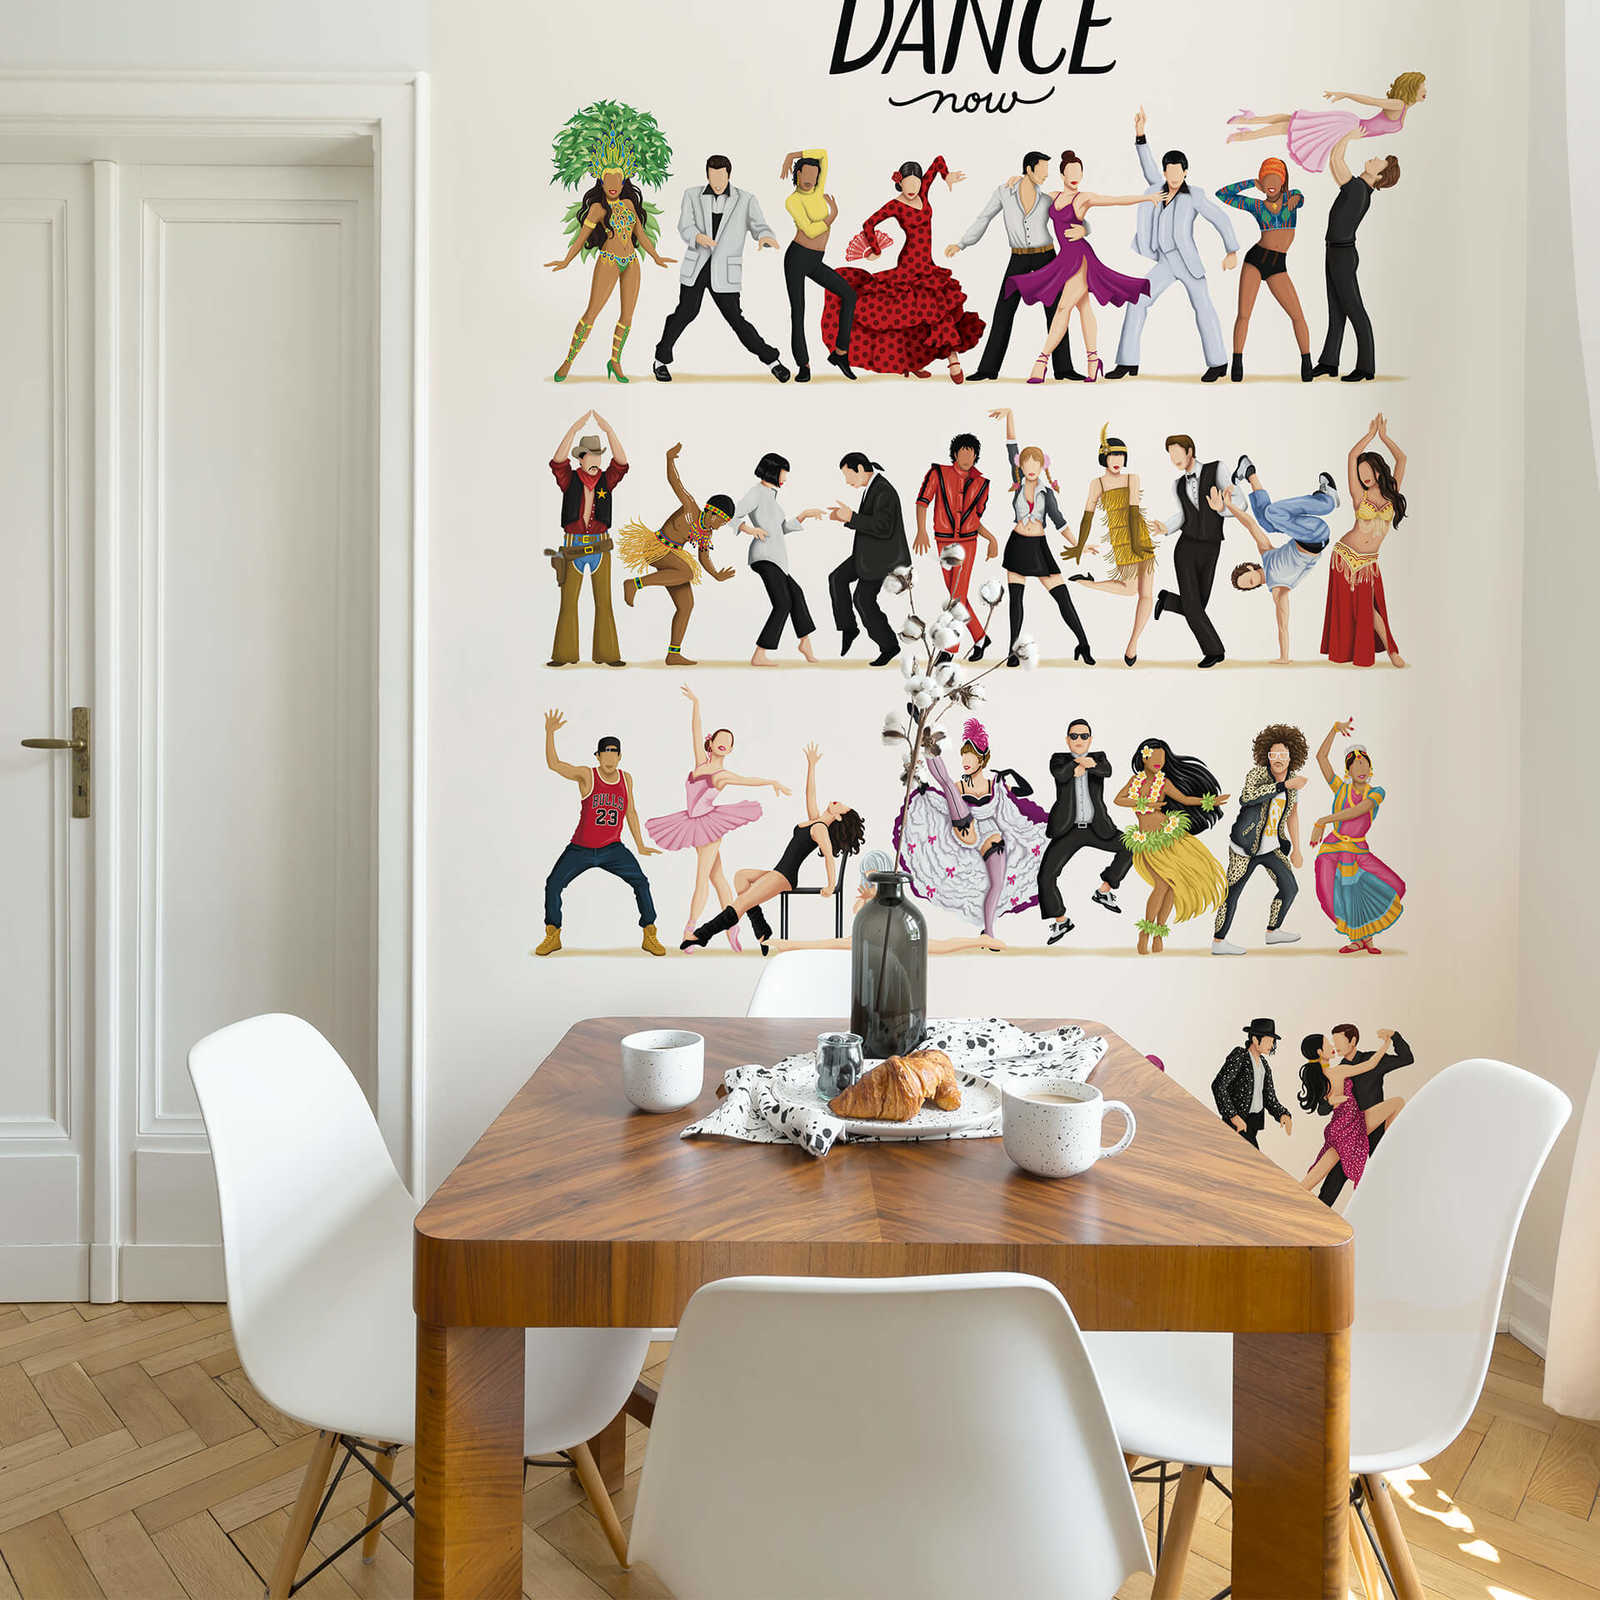             Papier peint personnes dansant esquissé
        